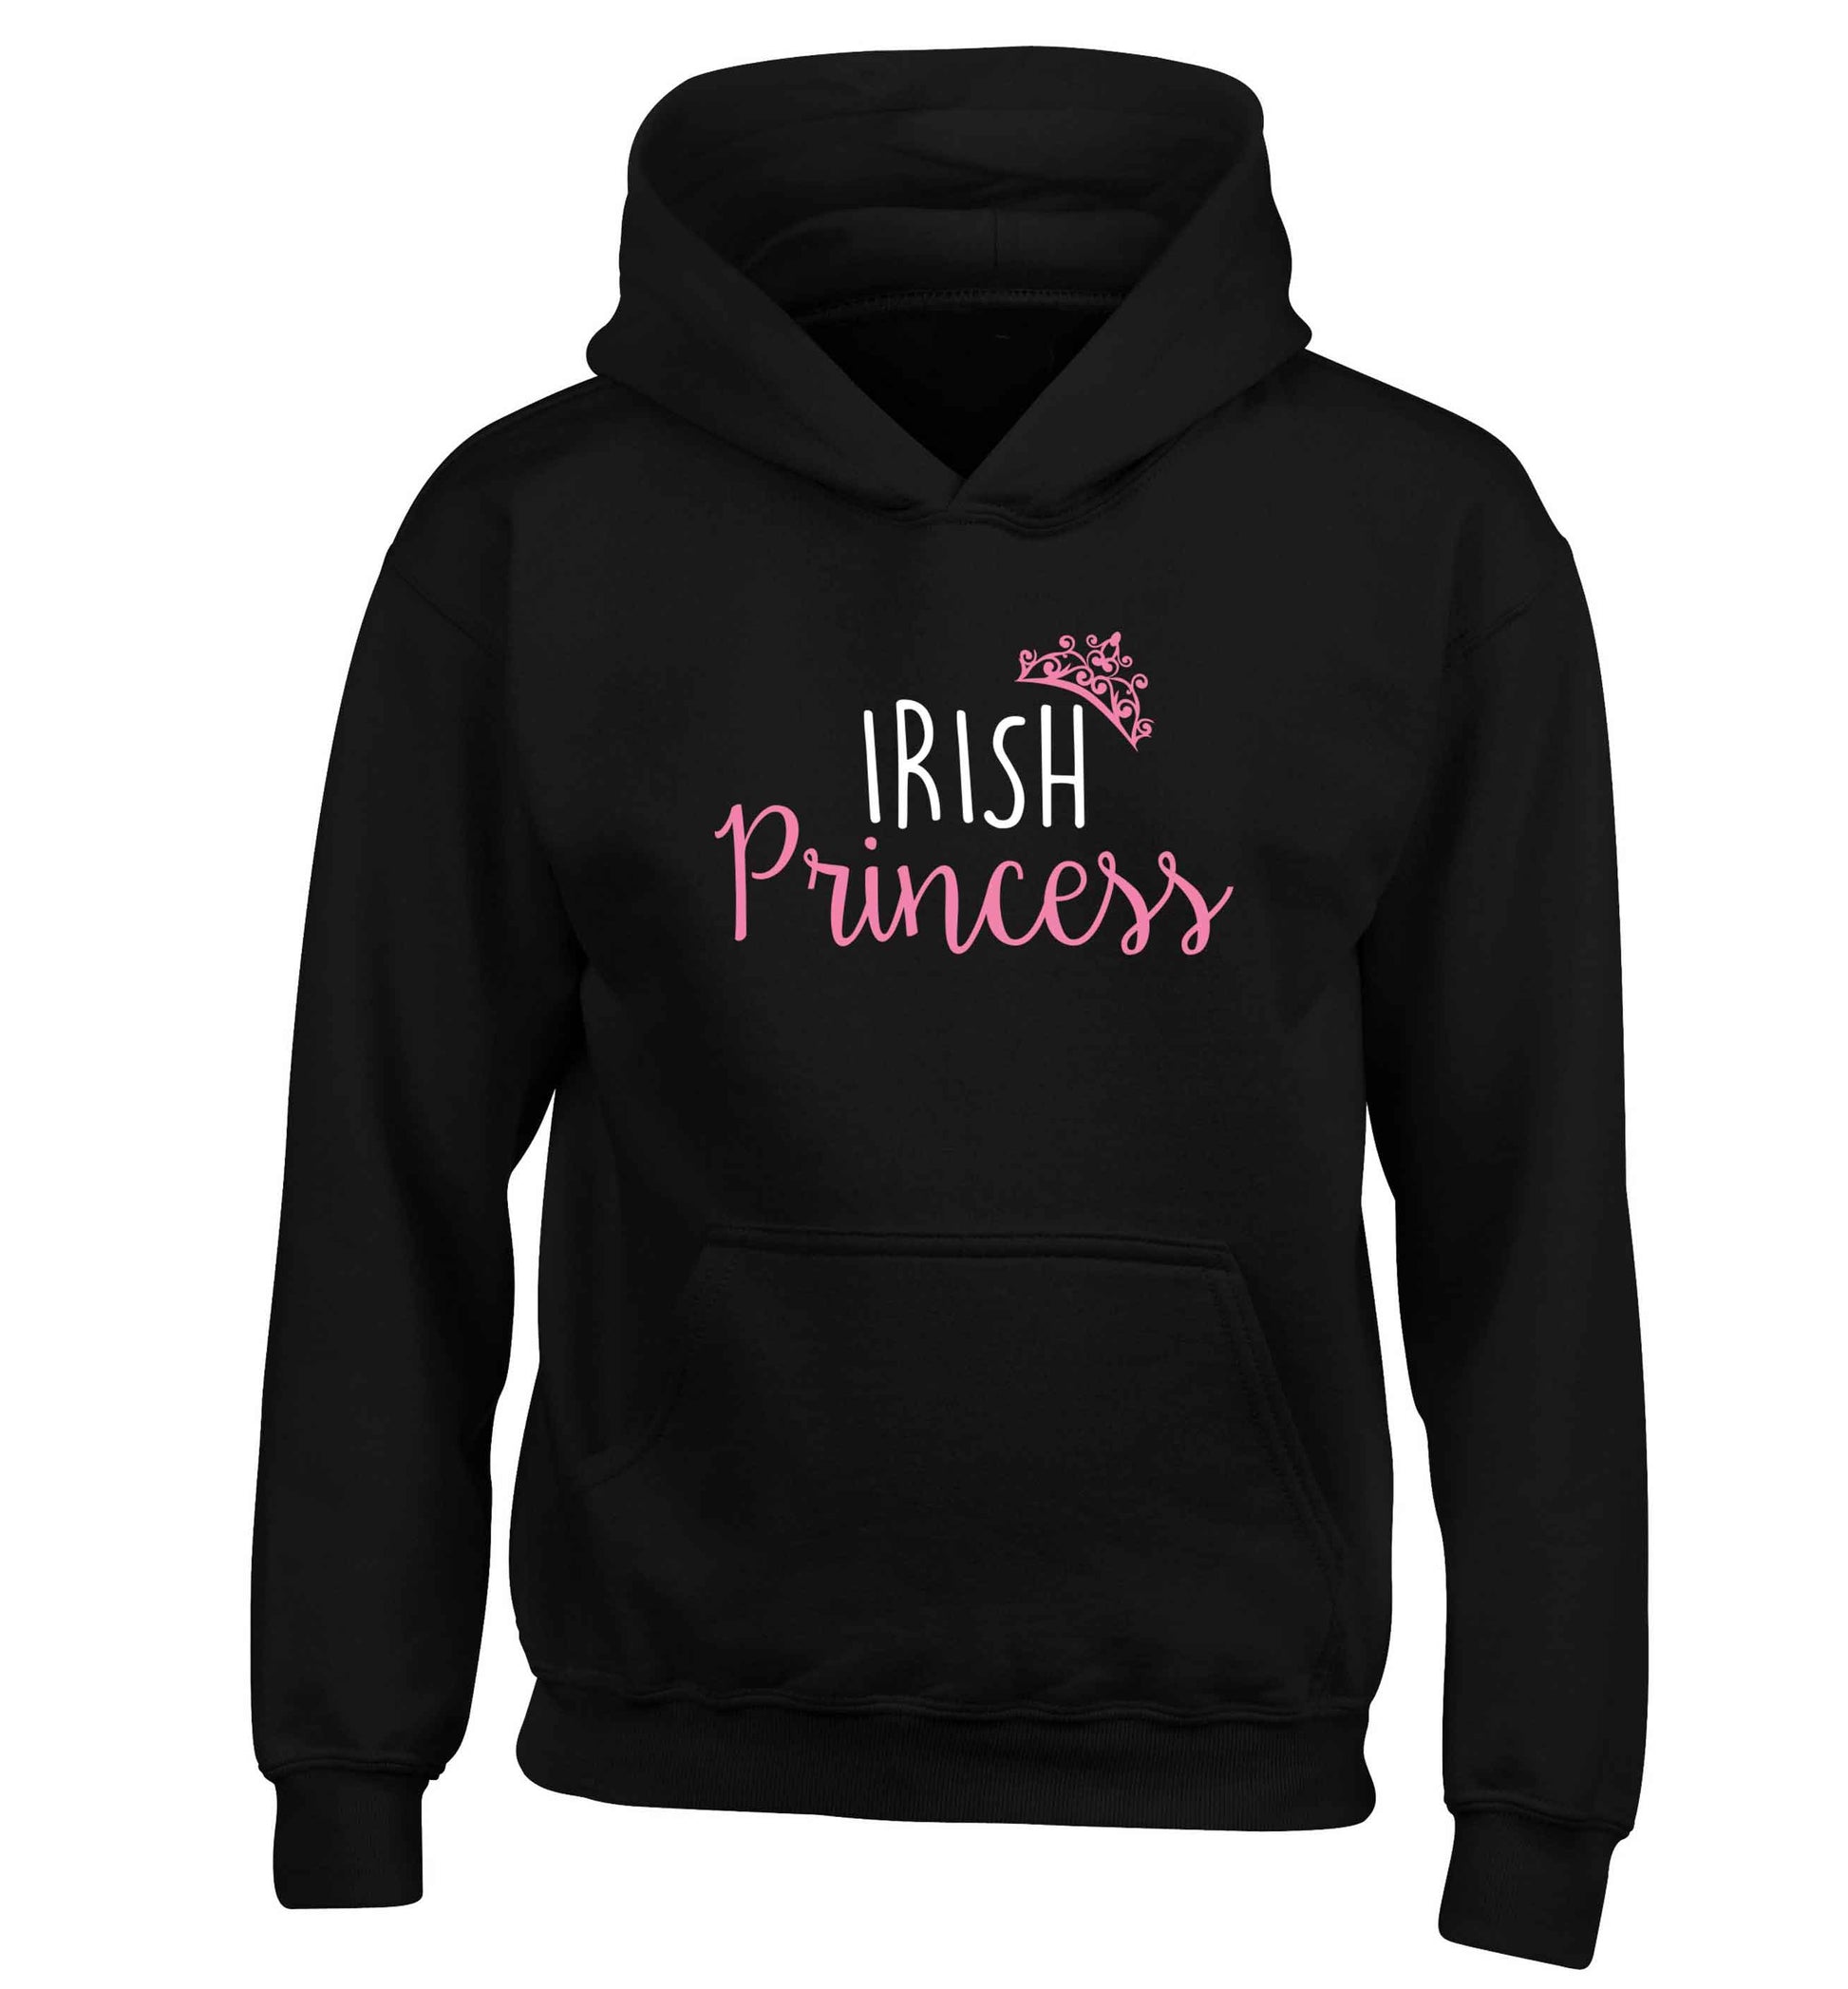 Irish princess children's black hoodie 12-13 Years